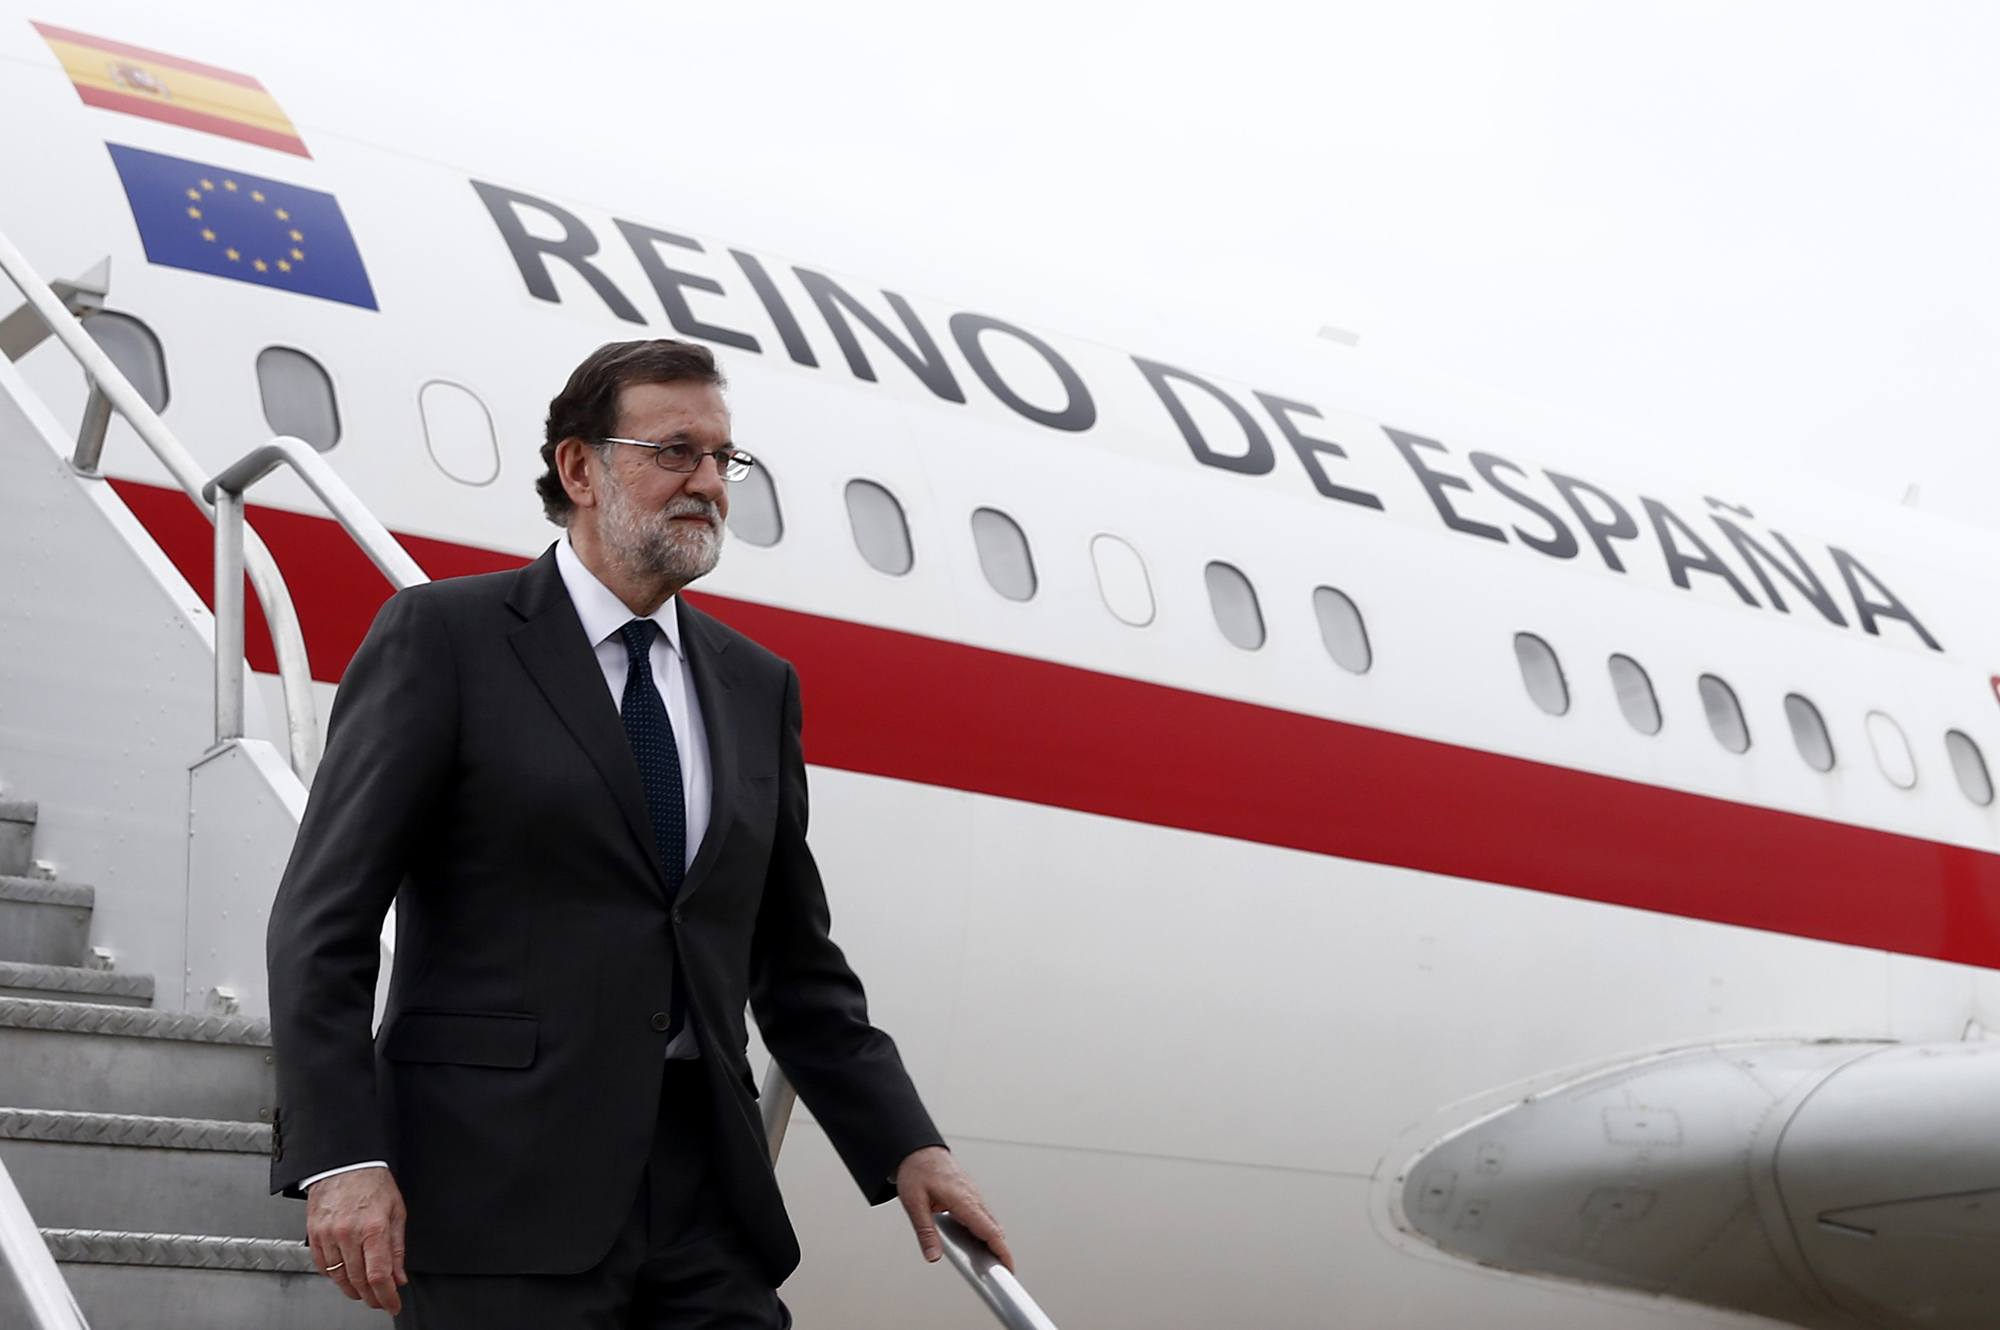 Entrevista a Cristina Crespo sobre la reunión de Rajoy con Trump